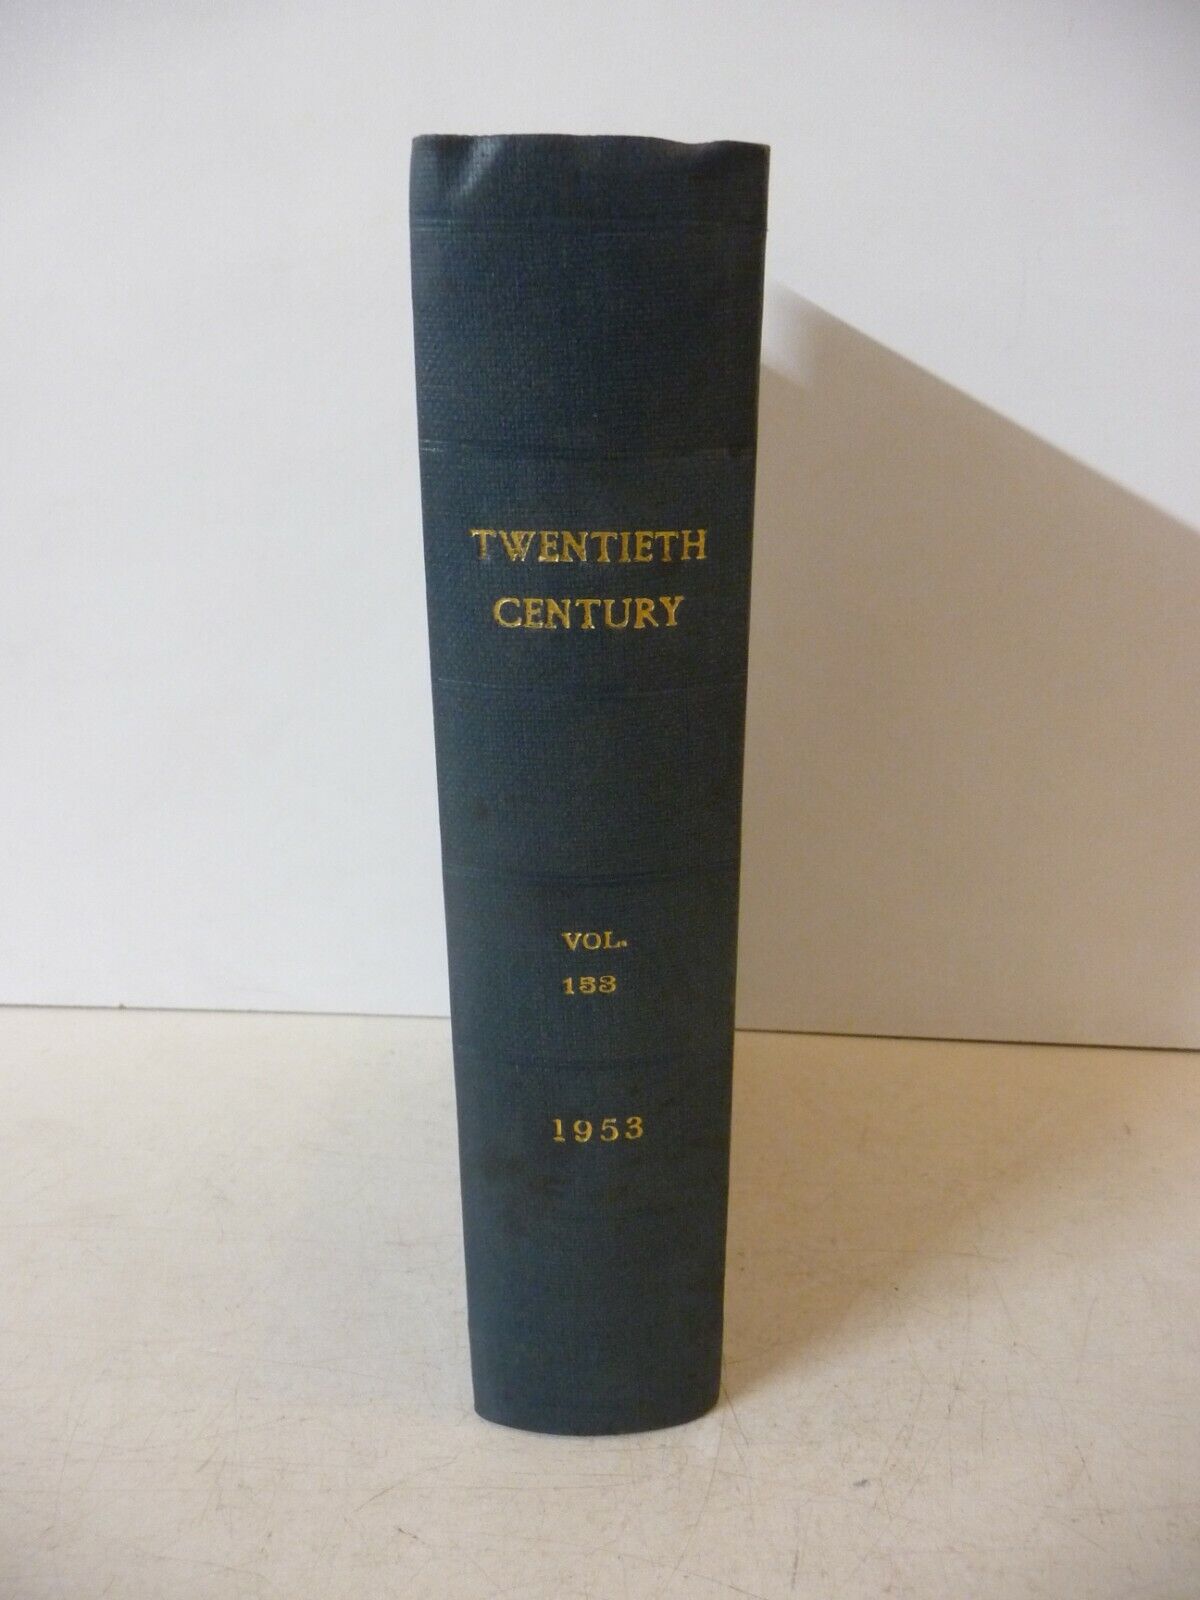 The Twentieth Century: Volume 153 (January - June 1953) Tania okazja, bardzo popularna